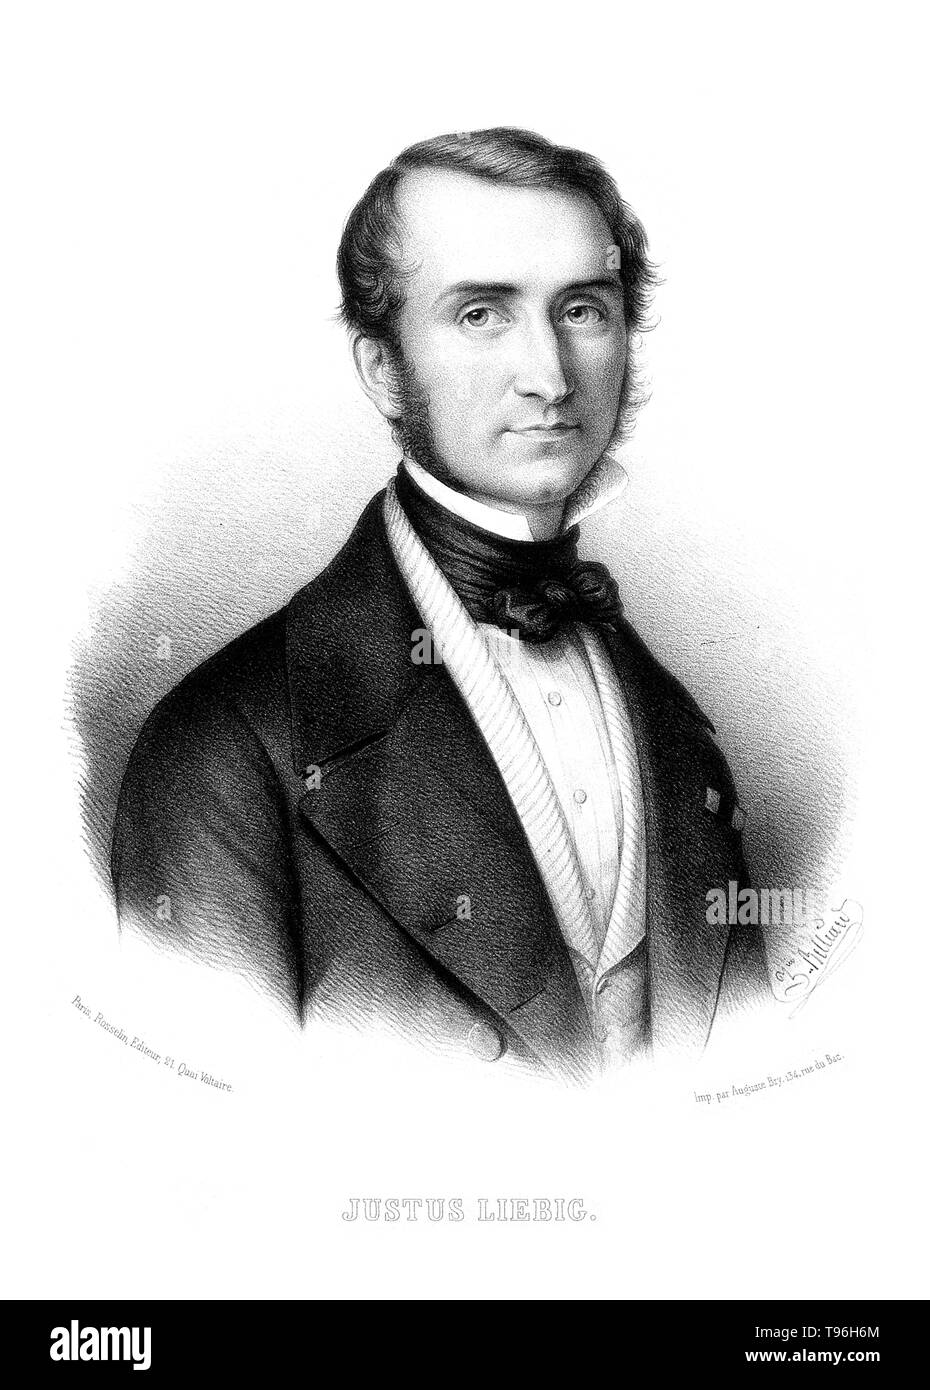 Justus von Liebig (12 mai 1803 - 18 avril 1873) était un chimiste allemand qui a fait d'importantes contributions à la chimie biologique et agricole, et a travaillé sur l'organisation de la chimie organique. Il a conçu le laboratoire moderne méthode d'enseignement axés sur et est considéré comme l'un des plus grands professeurs de chimie de tous les temps. Il est connu comme le ''père de l'industrie des engrais'' pour sa découverte de l'azote comme un élément nutritif essentiel, et sa formulation de la loi du minimum qui décrit l'effet des différents nutriments sur les cultures. Il est mort en 1873 à l'âge de 69 ans. Lithogr Banque D'Images